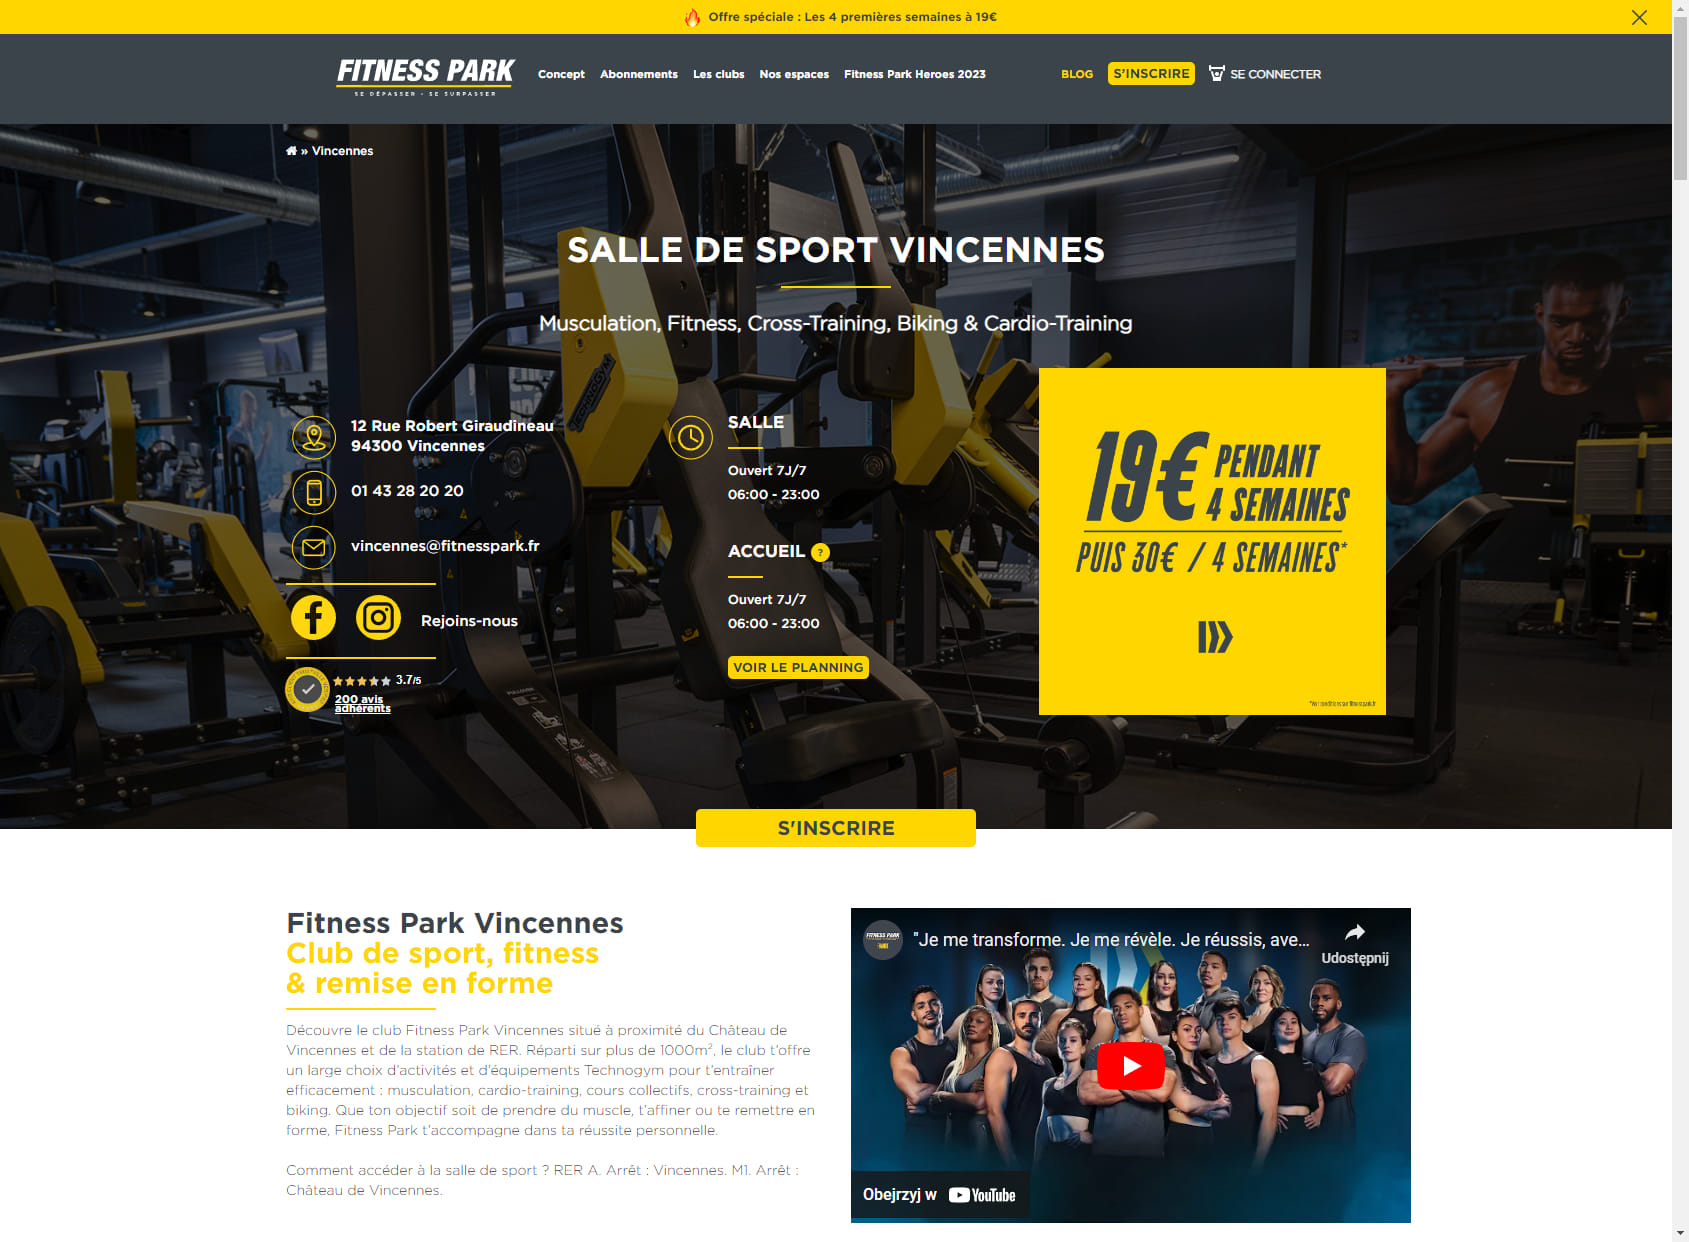 Salle de sport Vincennes - Fitness Park